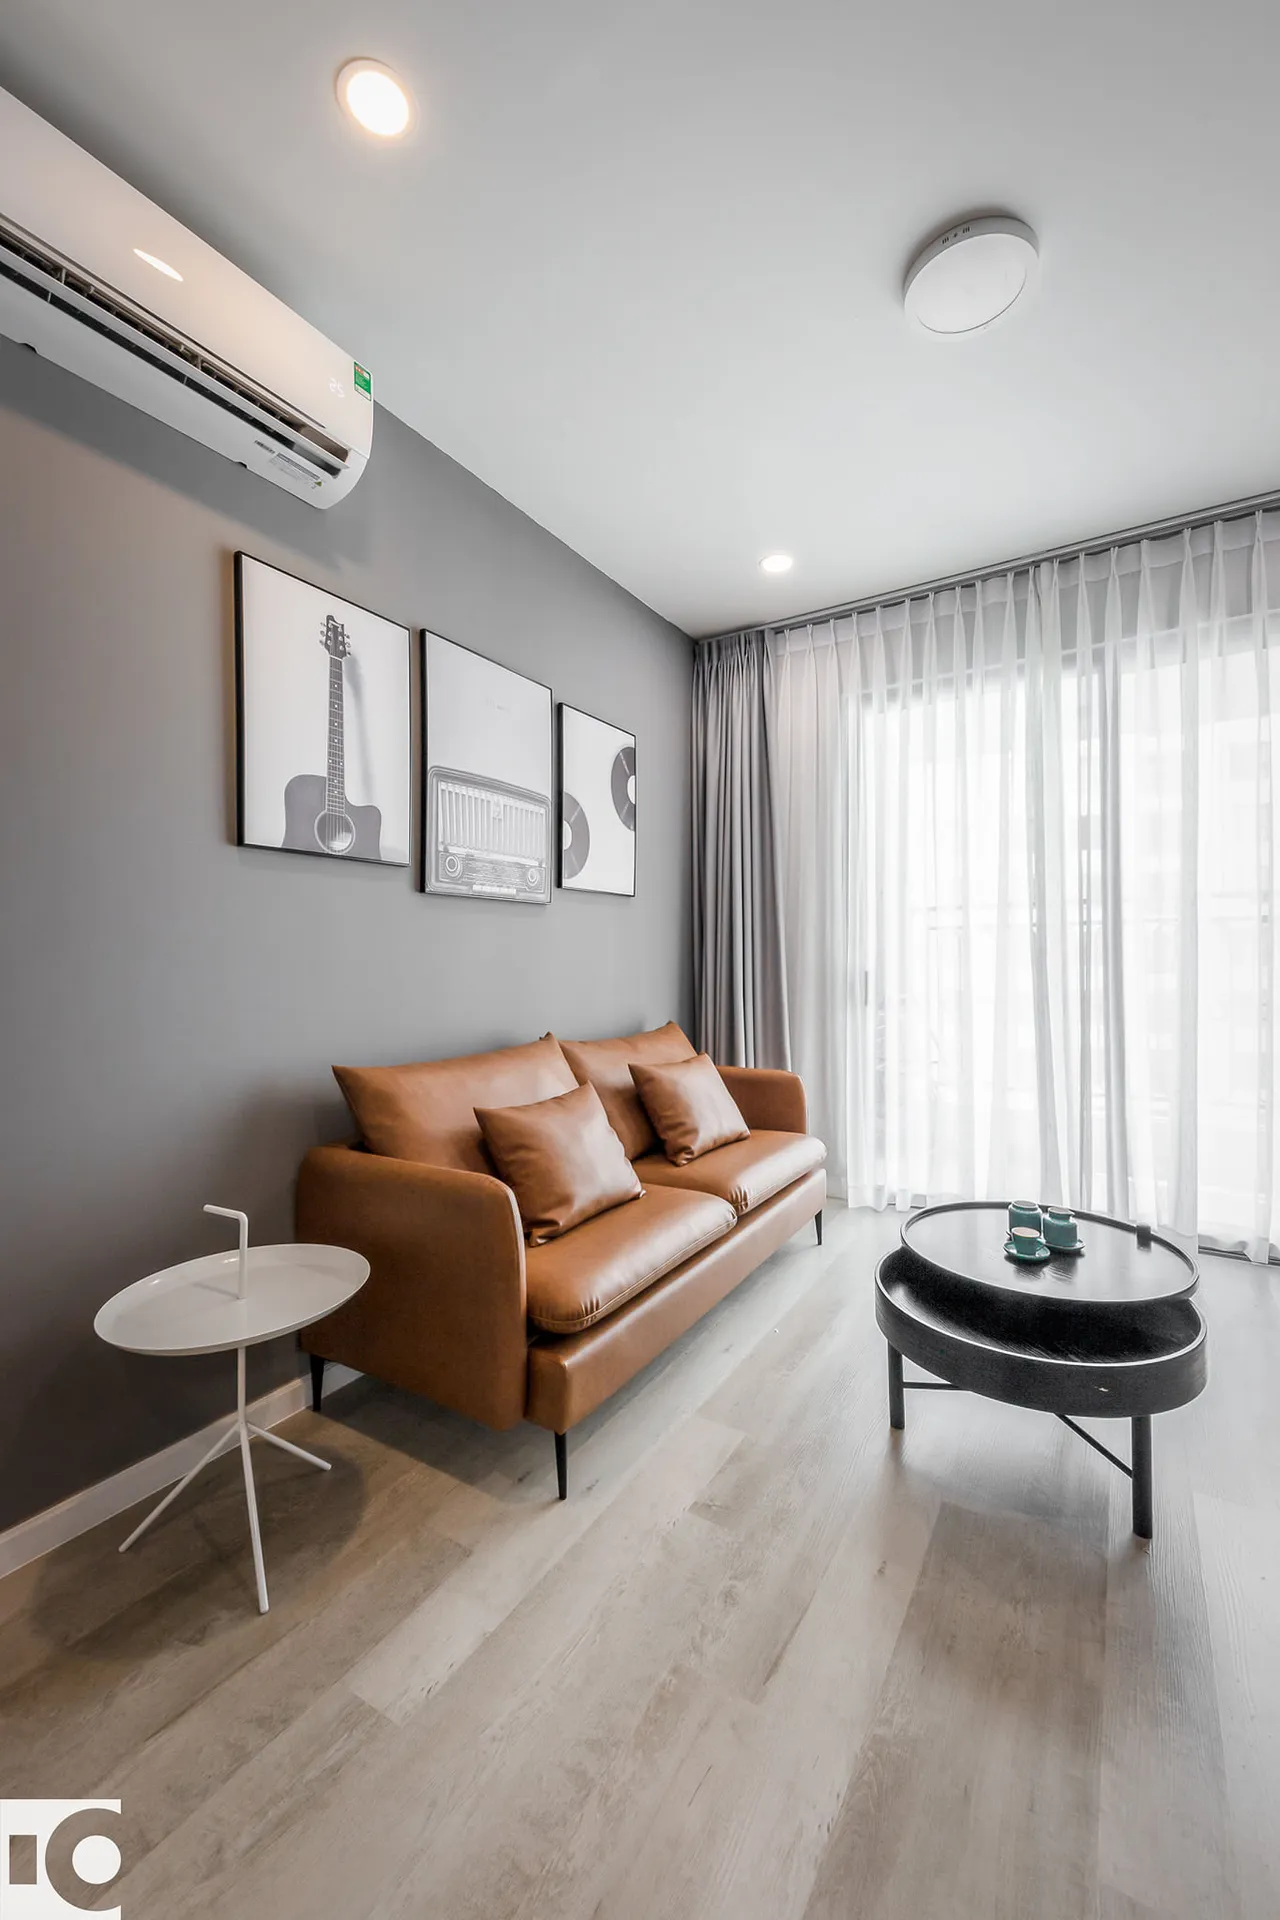 Hoàn thiện nội thất phòng khách Căn hộ Saigon Royal Quận 4 phong cách Tối giản Minimalist